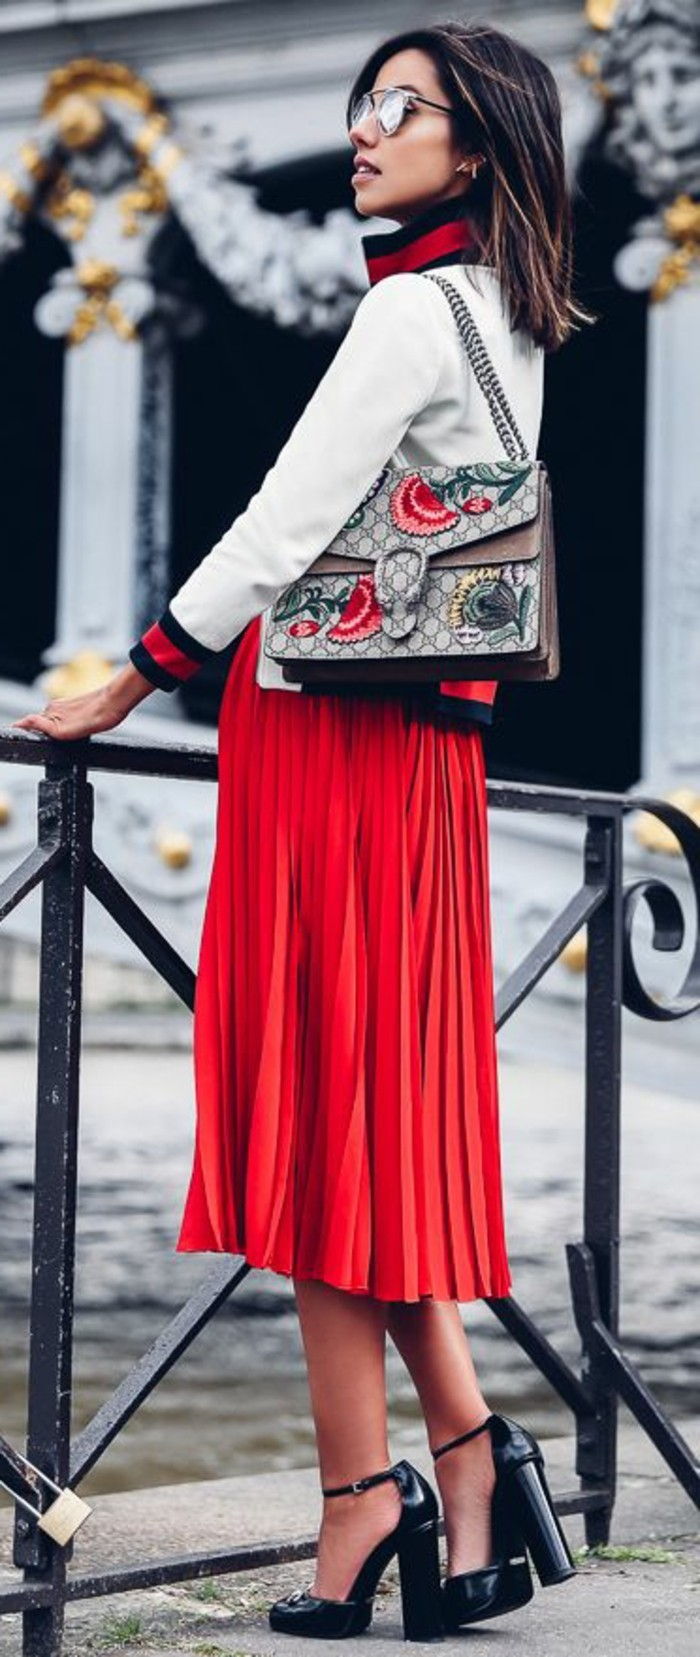 röd-dress-skor-elegant-fancy-look-röd-vit-svart-moderna skor Gucci väska